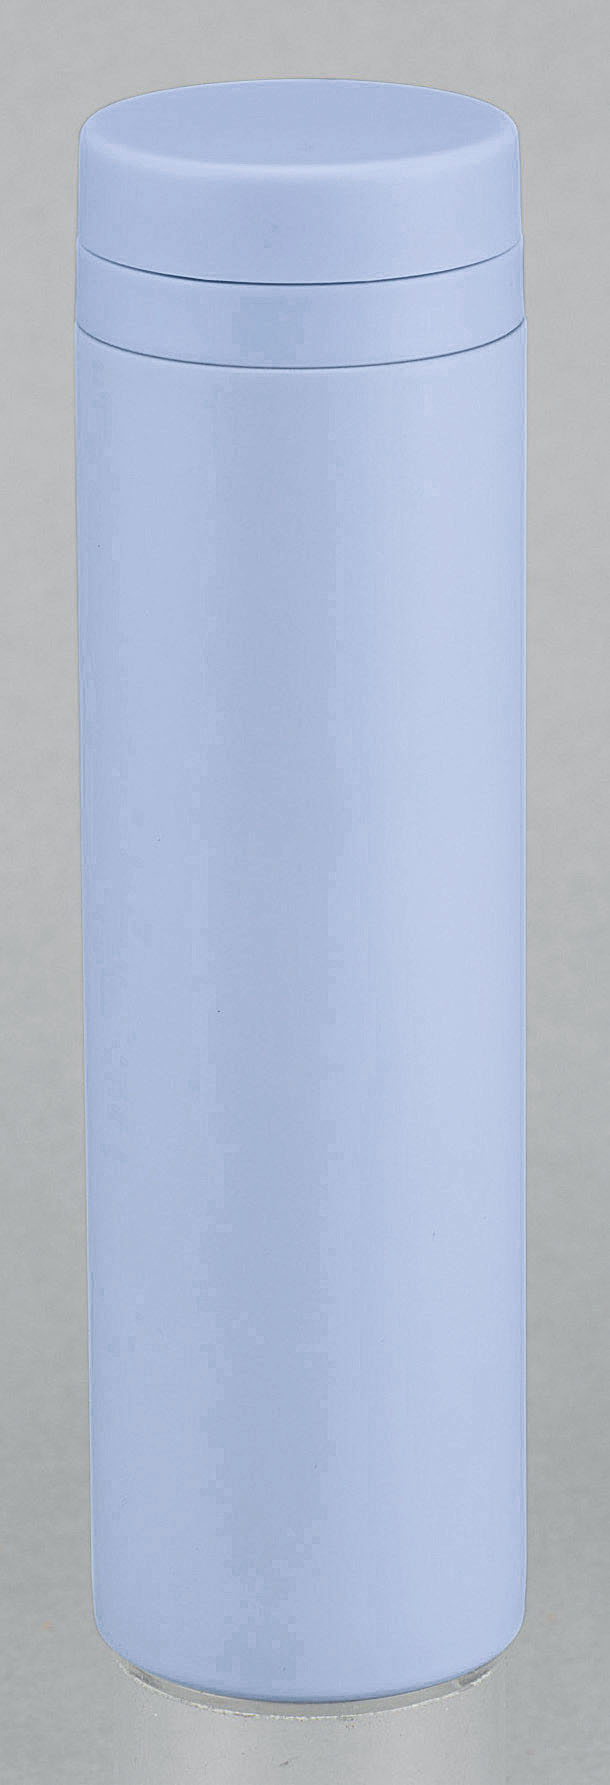 ステンレス製マグボトル480ml■ライトブルー